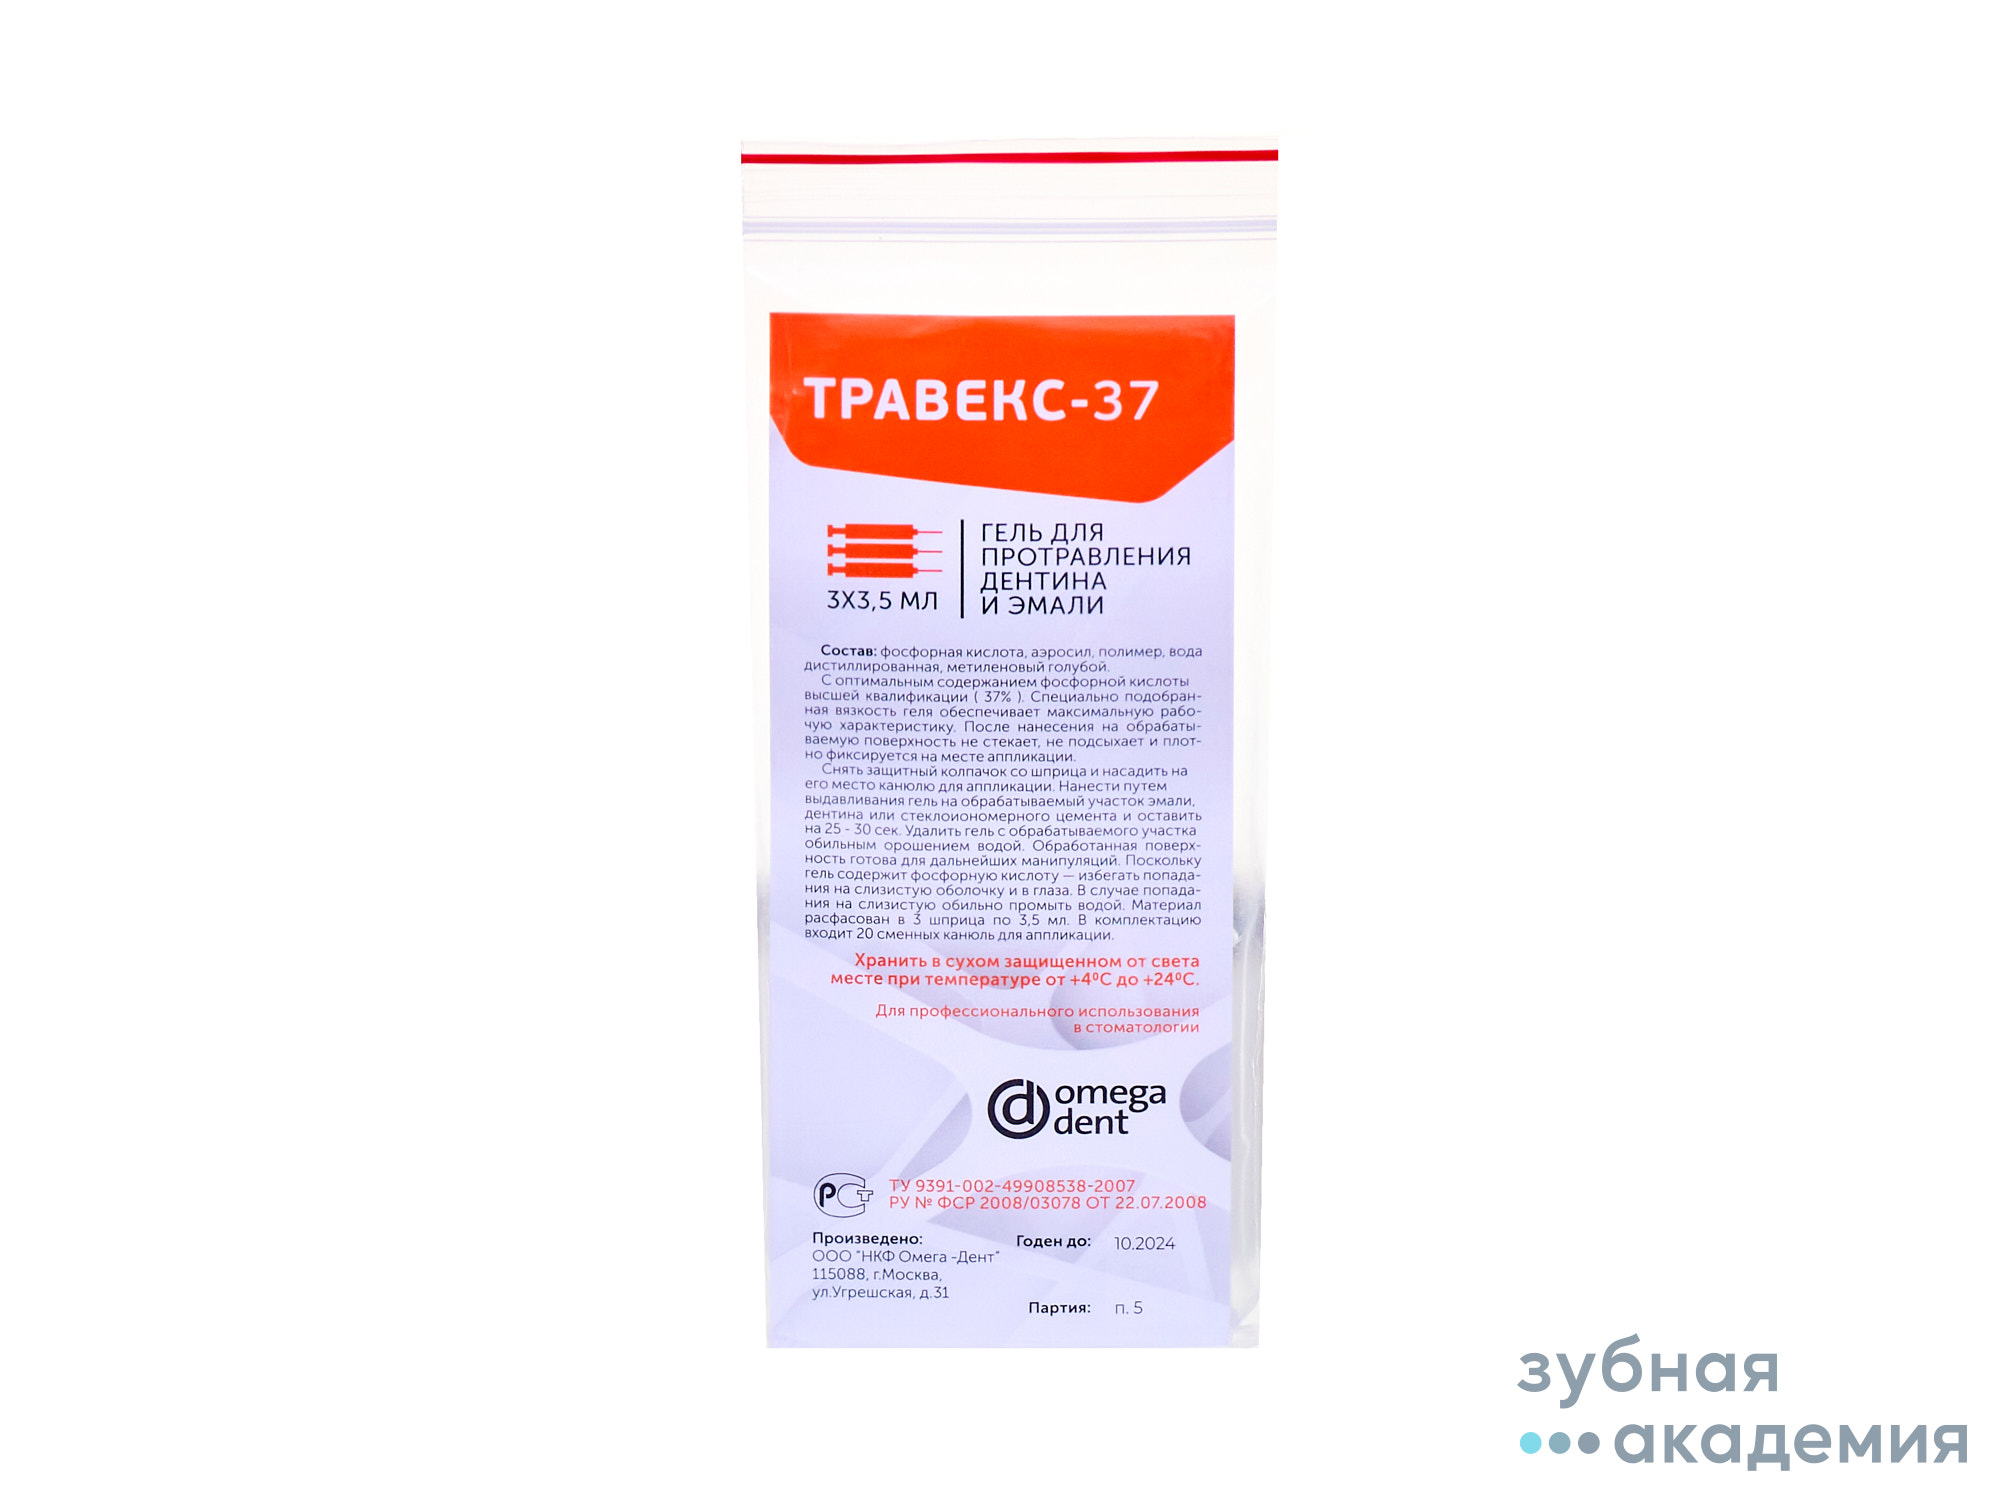 Гель для травления Травекс-37 гель для протравления дентина и эмали (3 х 3.5 мл)/Омега-Дент/ Россия